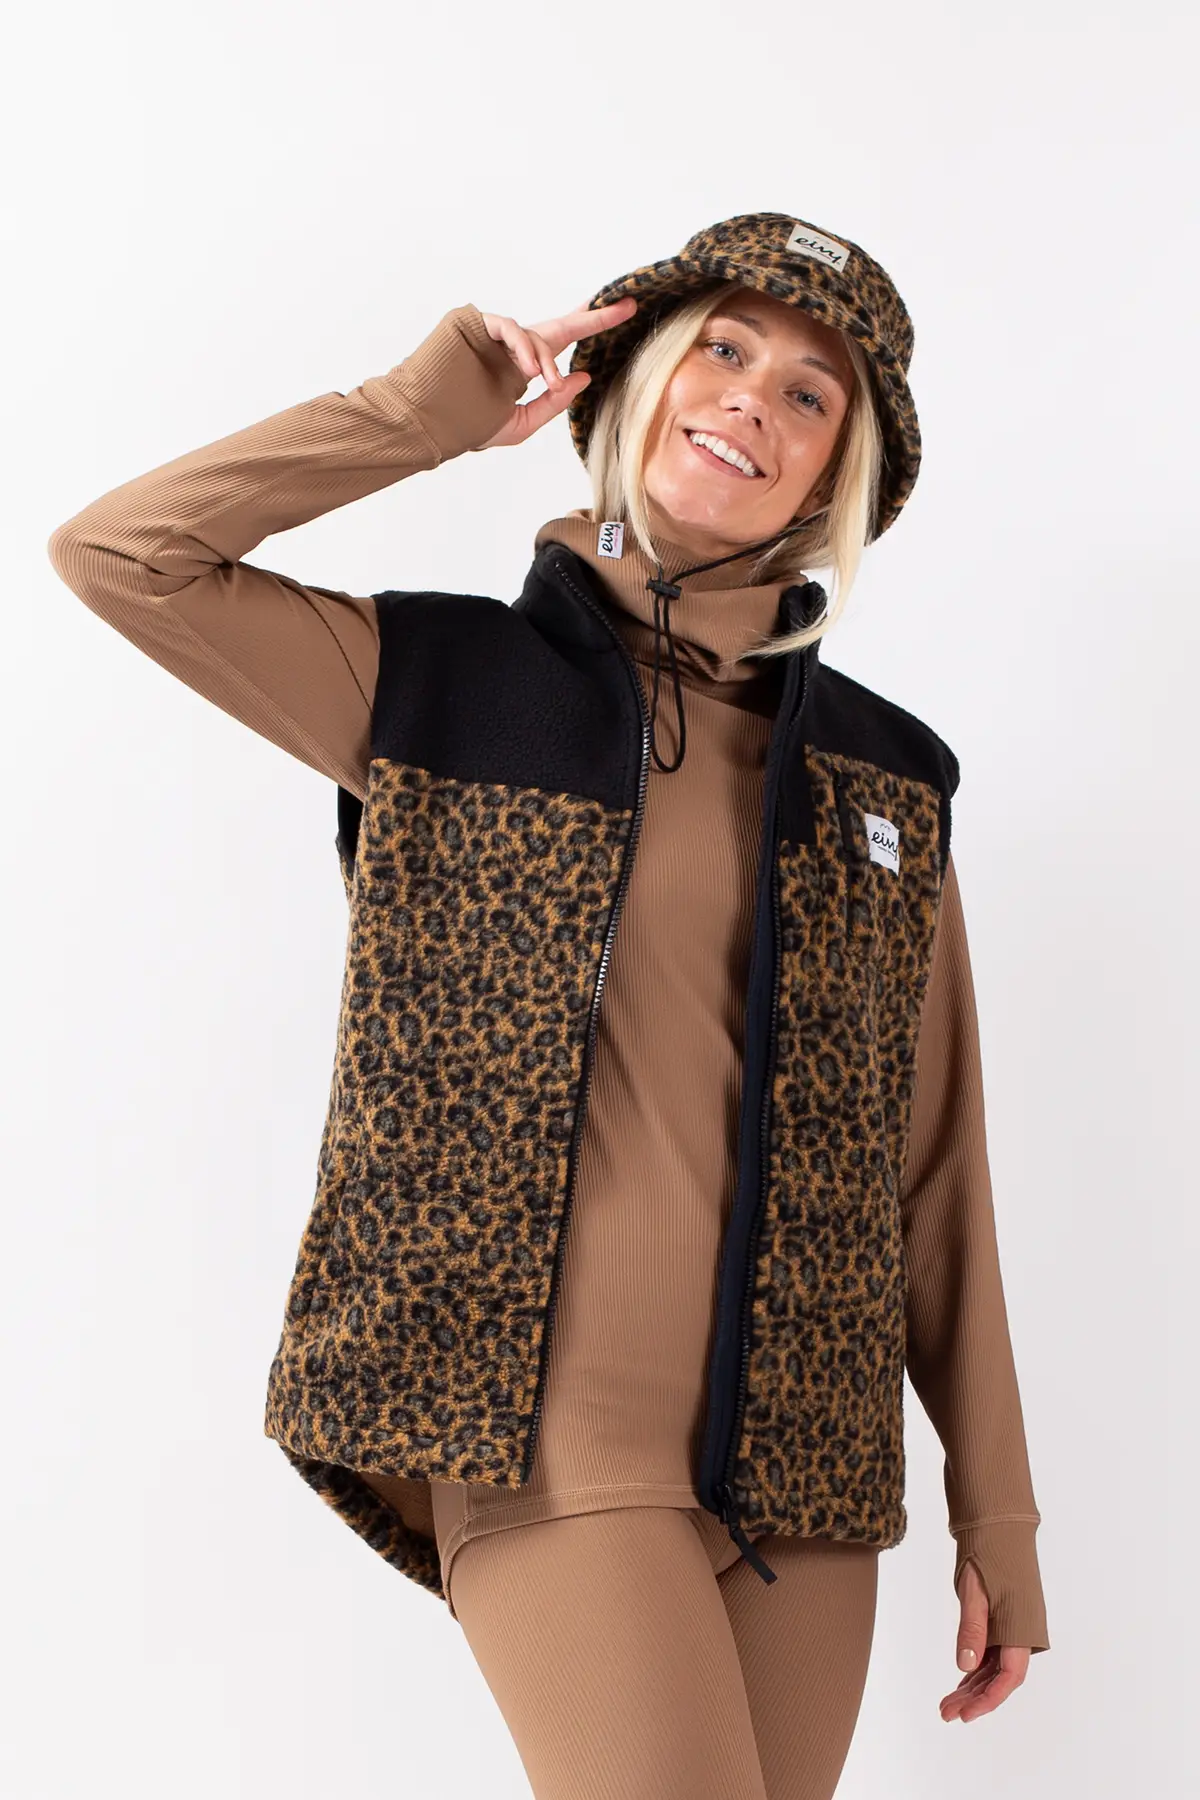 XFLWAM Womens Fuzzy Sherpa Fleece Jacket Lightweight Vest Leopard